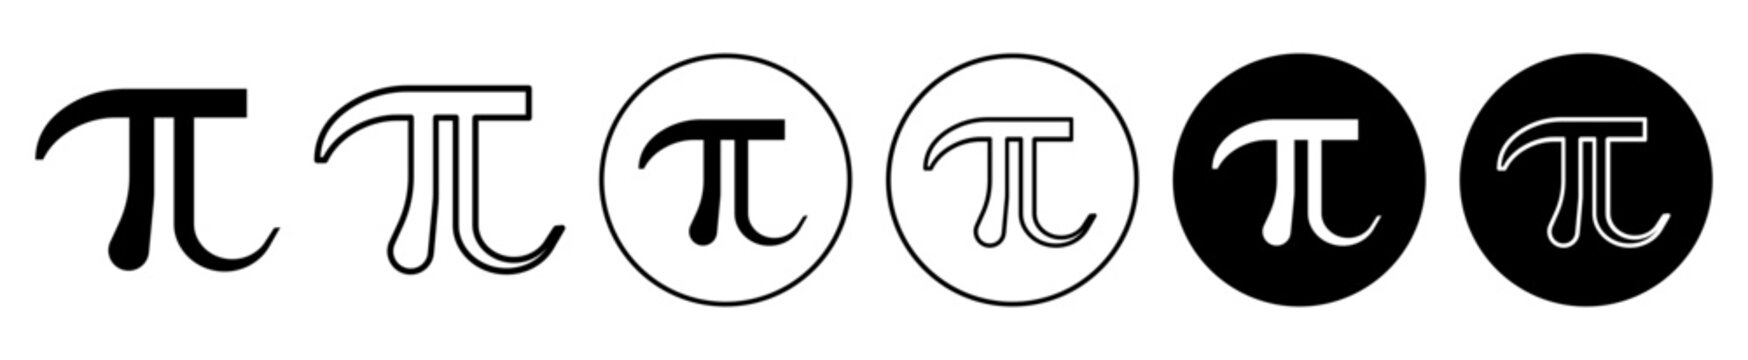 pi symbol greek letter pi vector symbol in black filled and outlined style.